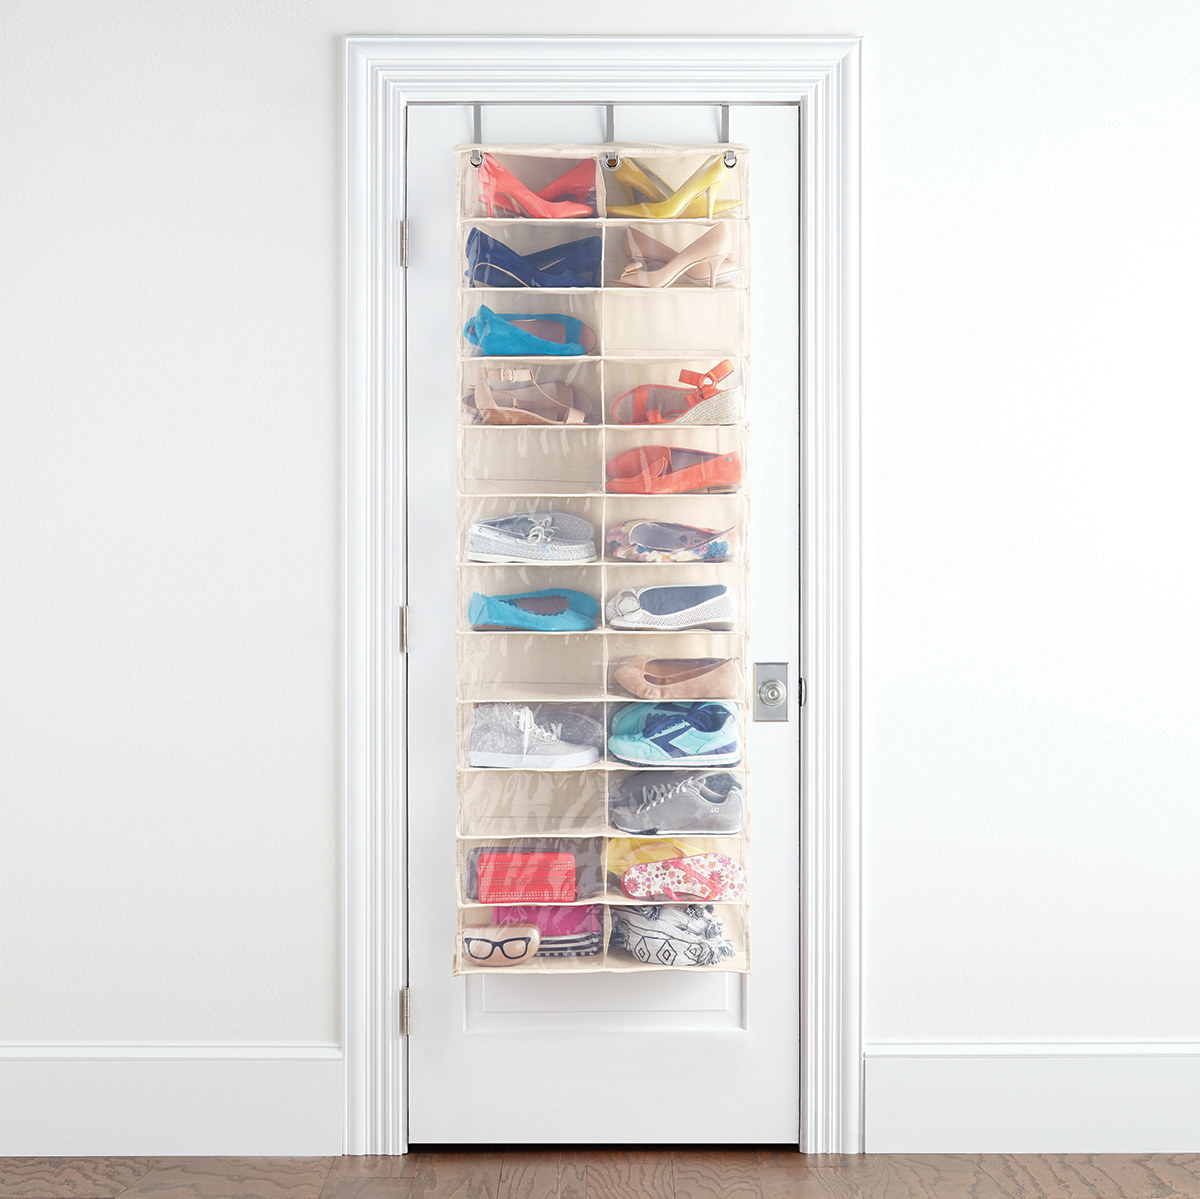 4 Tier Cream Over Door Hanging Hook Organiser Shoes Storage Pocket Space Saver 